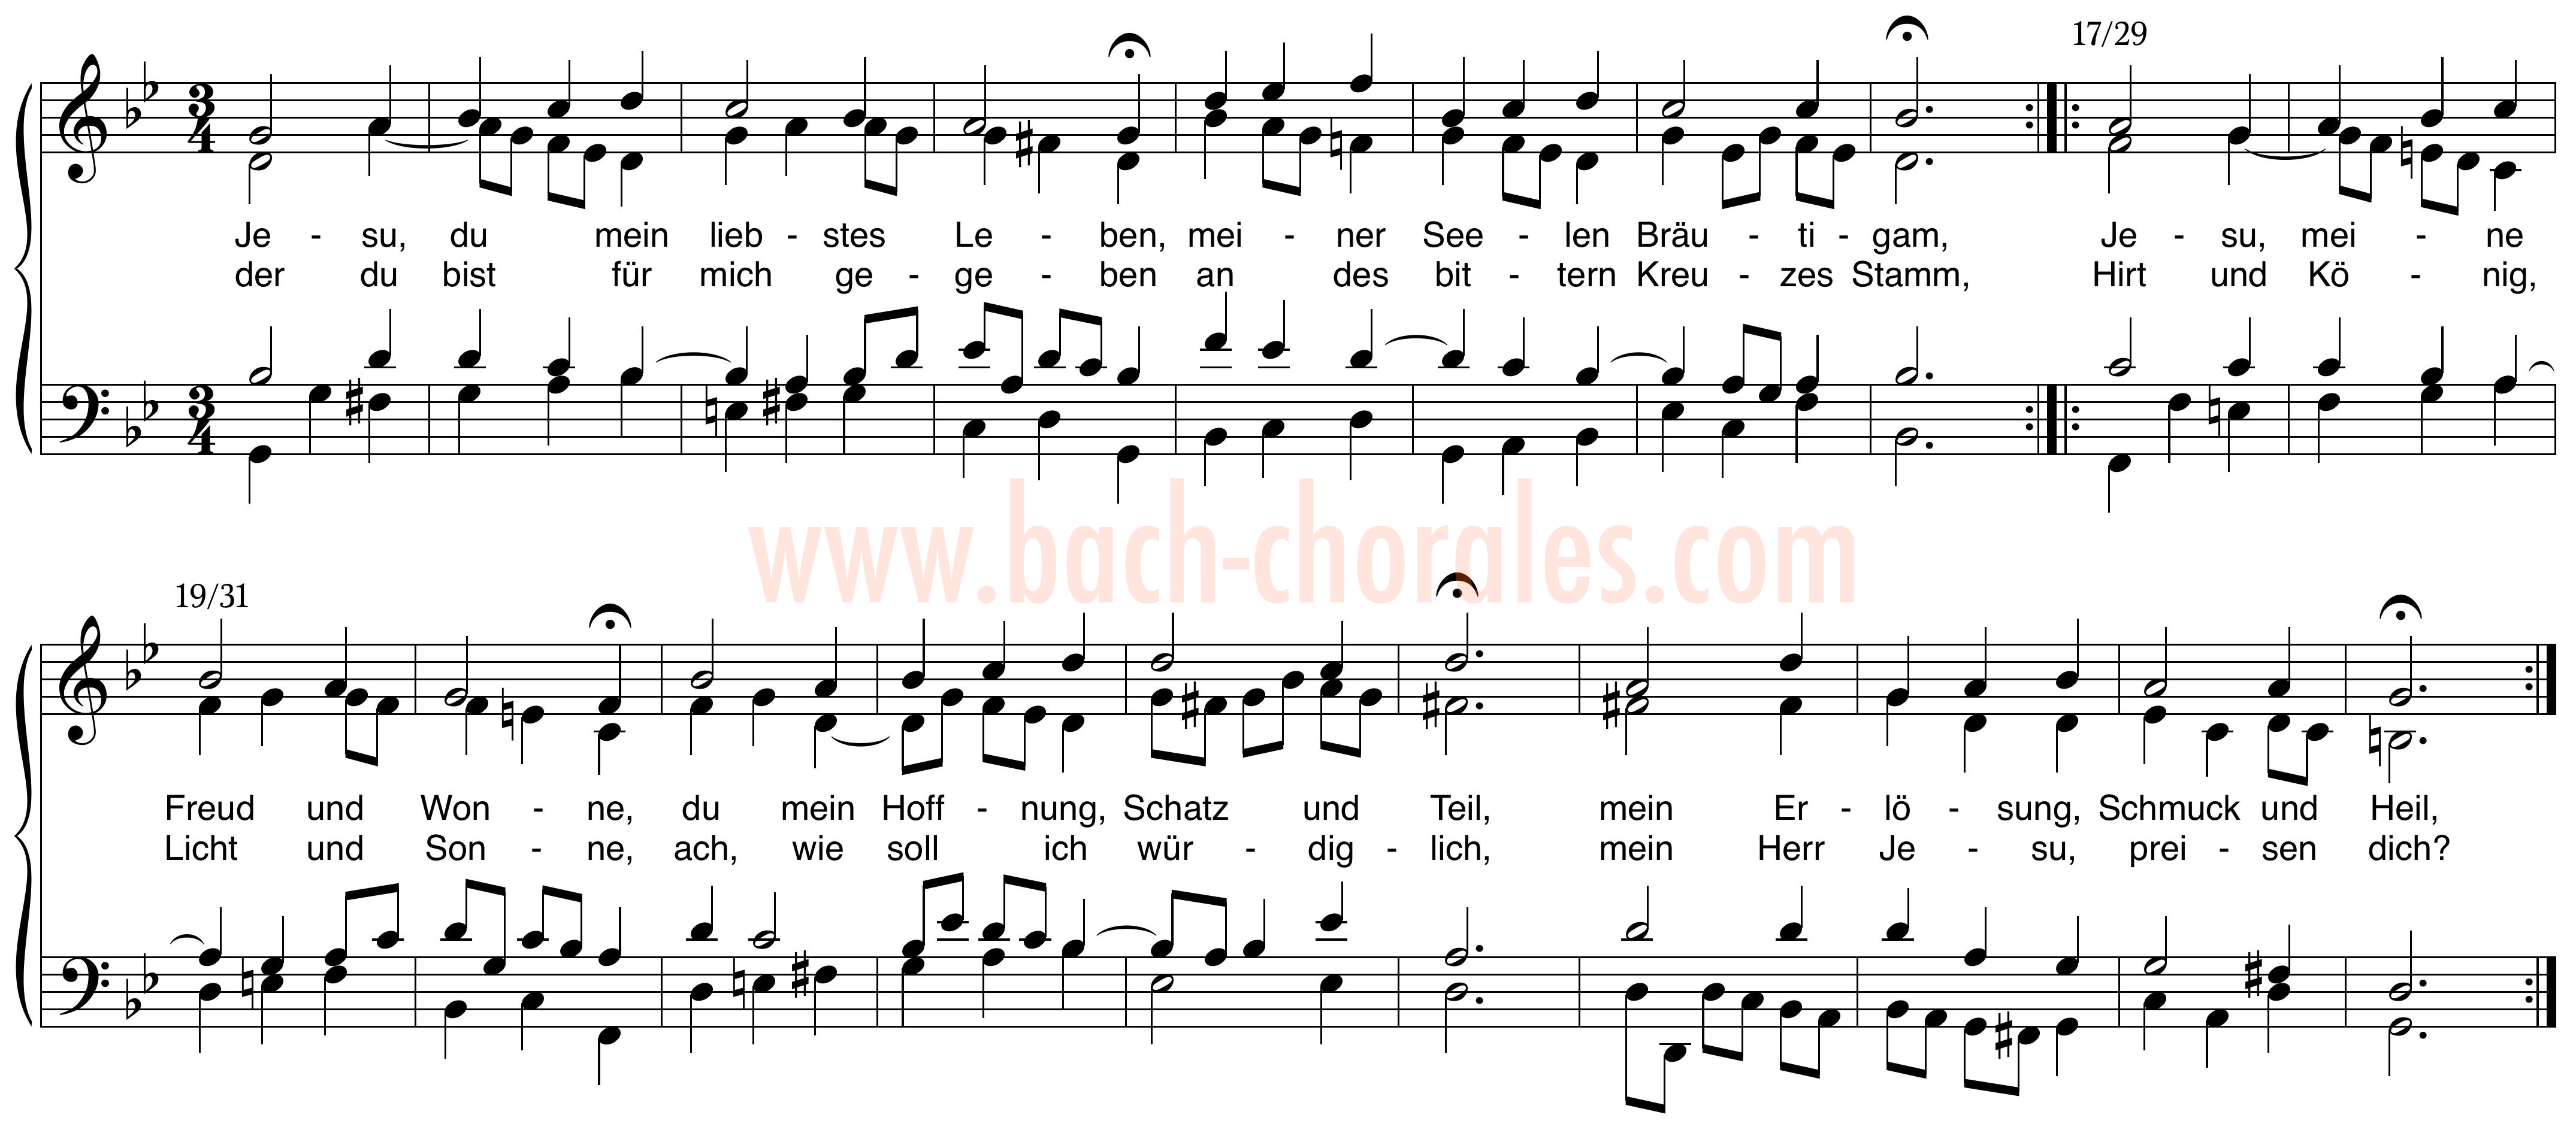 notenbeeld BWV 356 op https://www.bach-chorales.com/